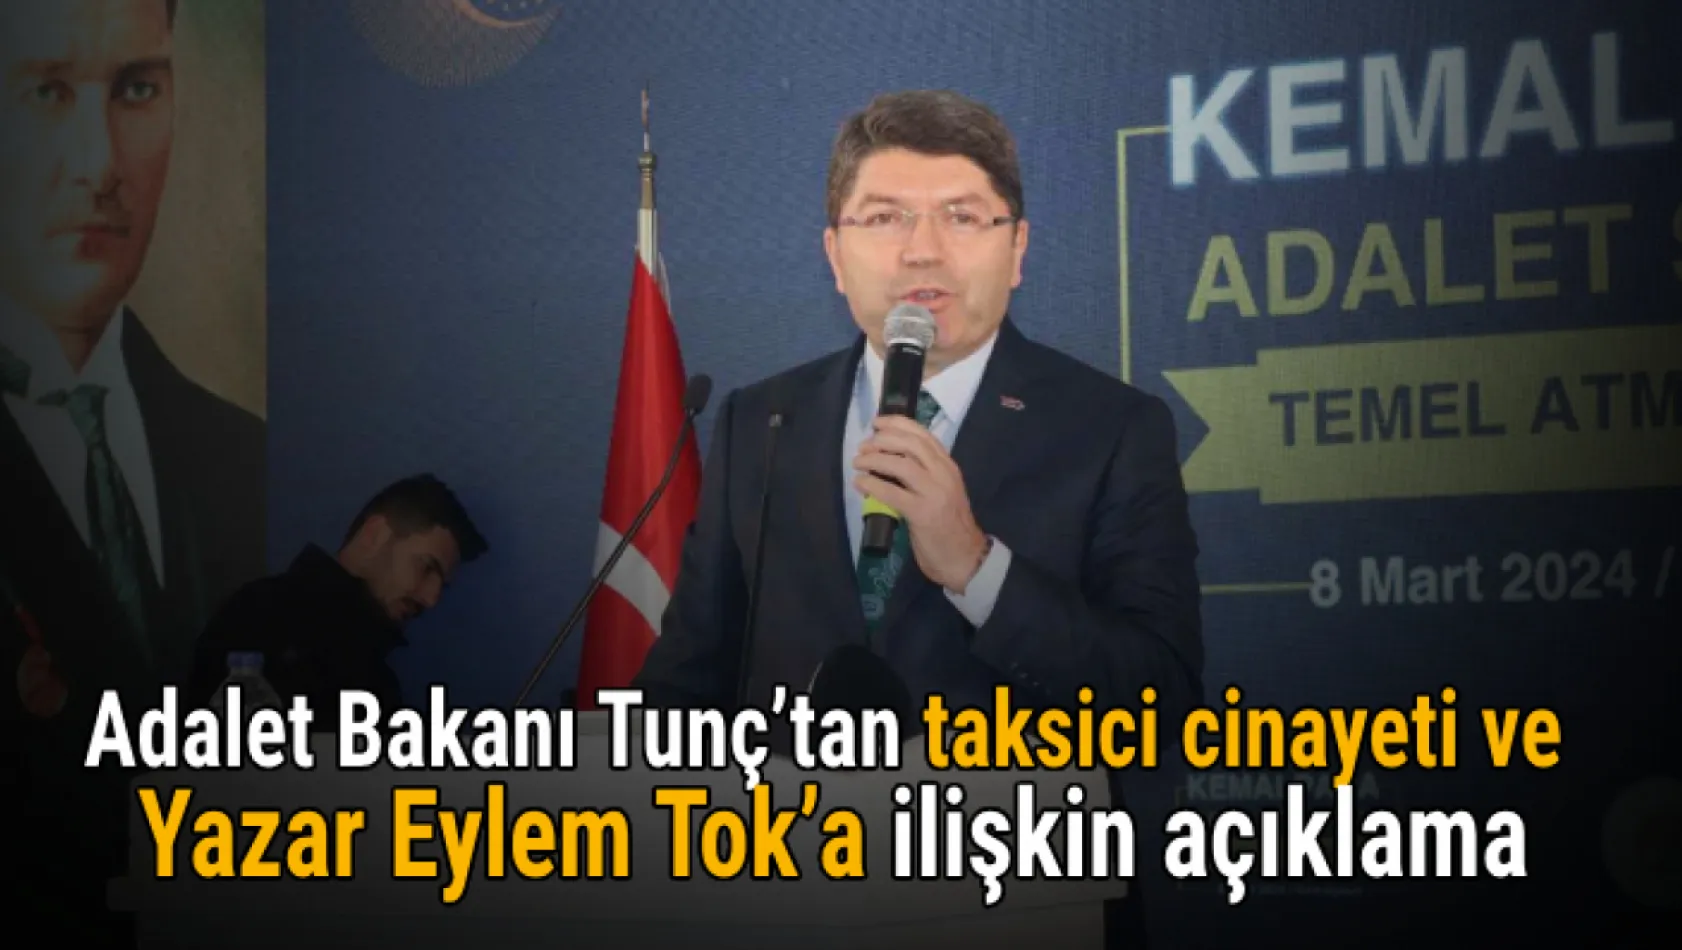 Adalet Bakanı Tunç'tan taksici cinayeti ve Yazar Eylem Tok'a ilişkin açıklama